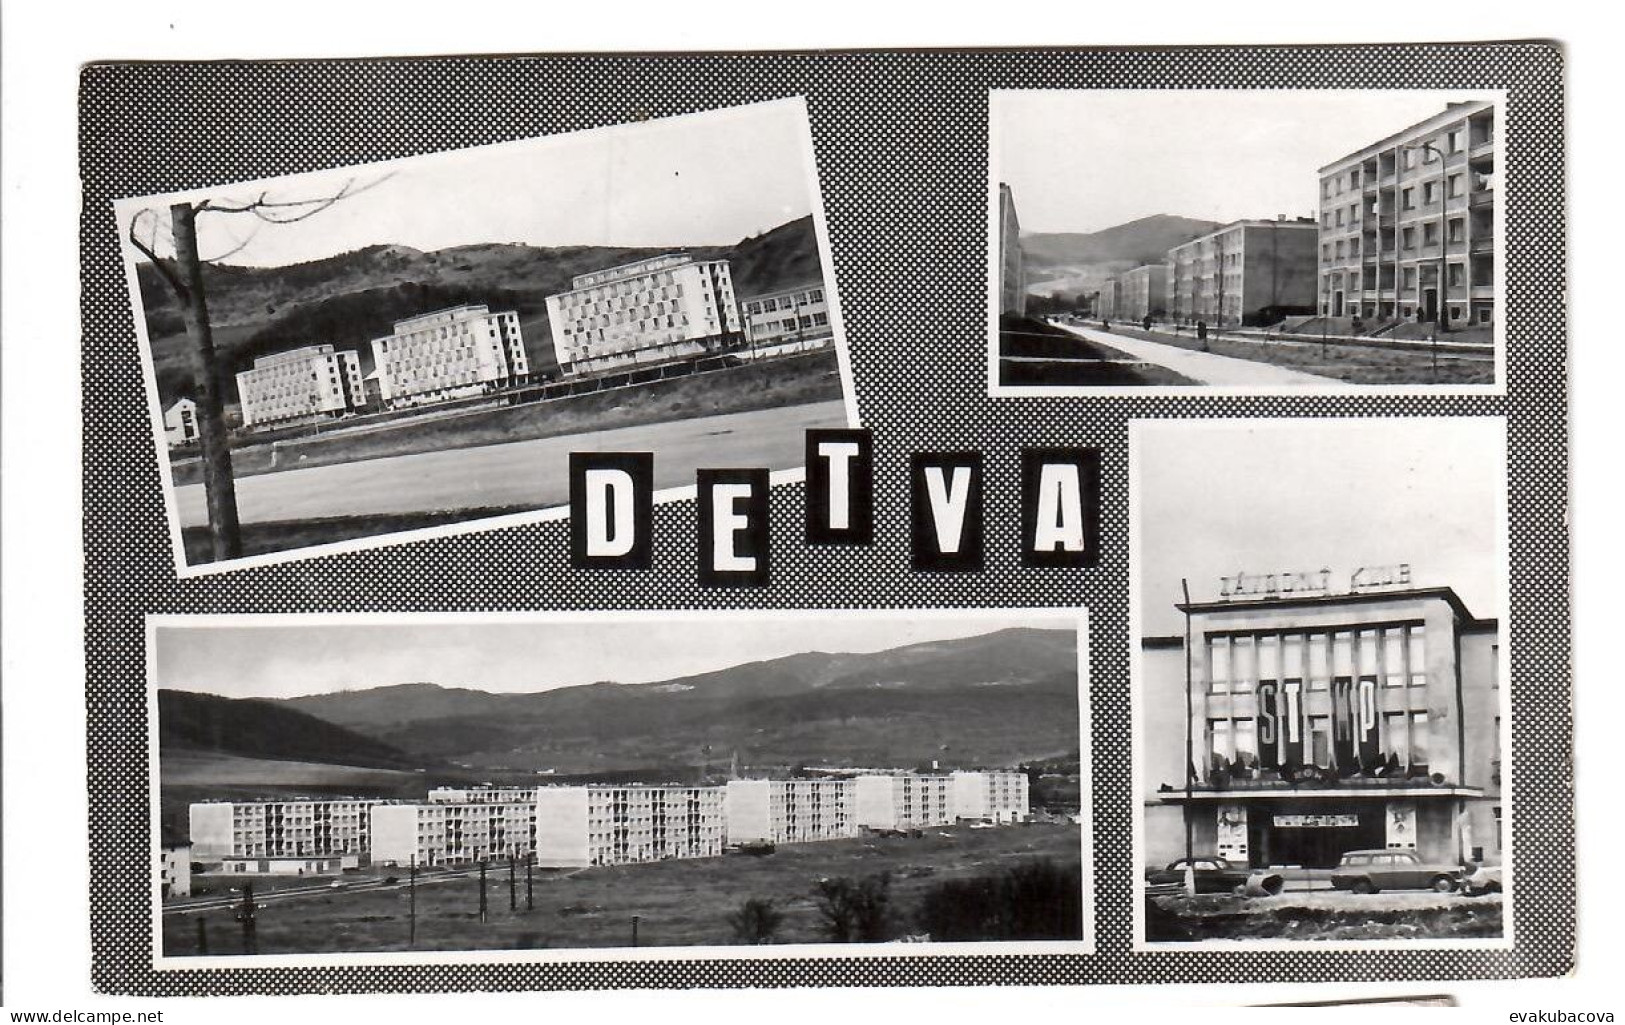 Detva. - Slovakia